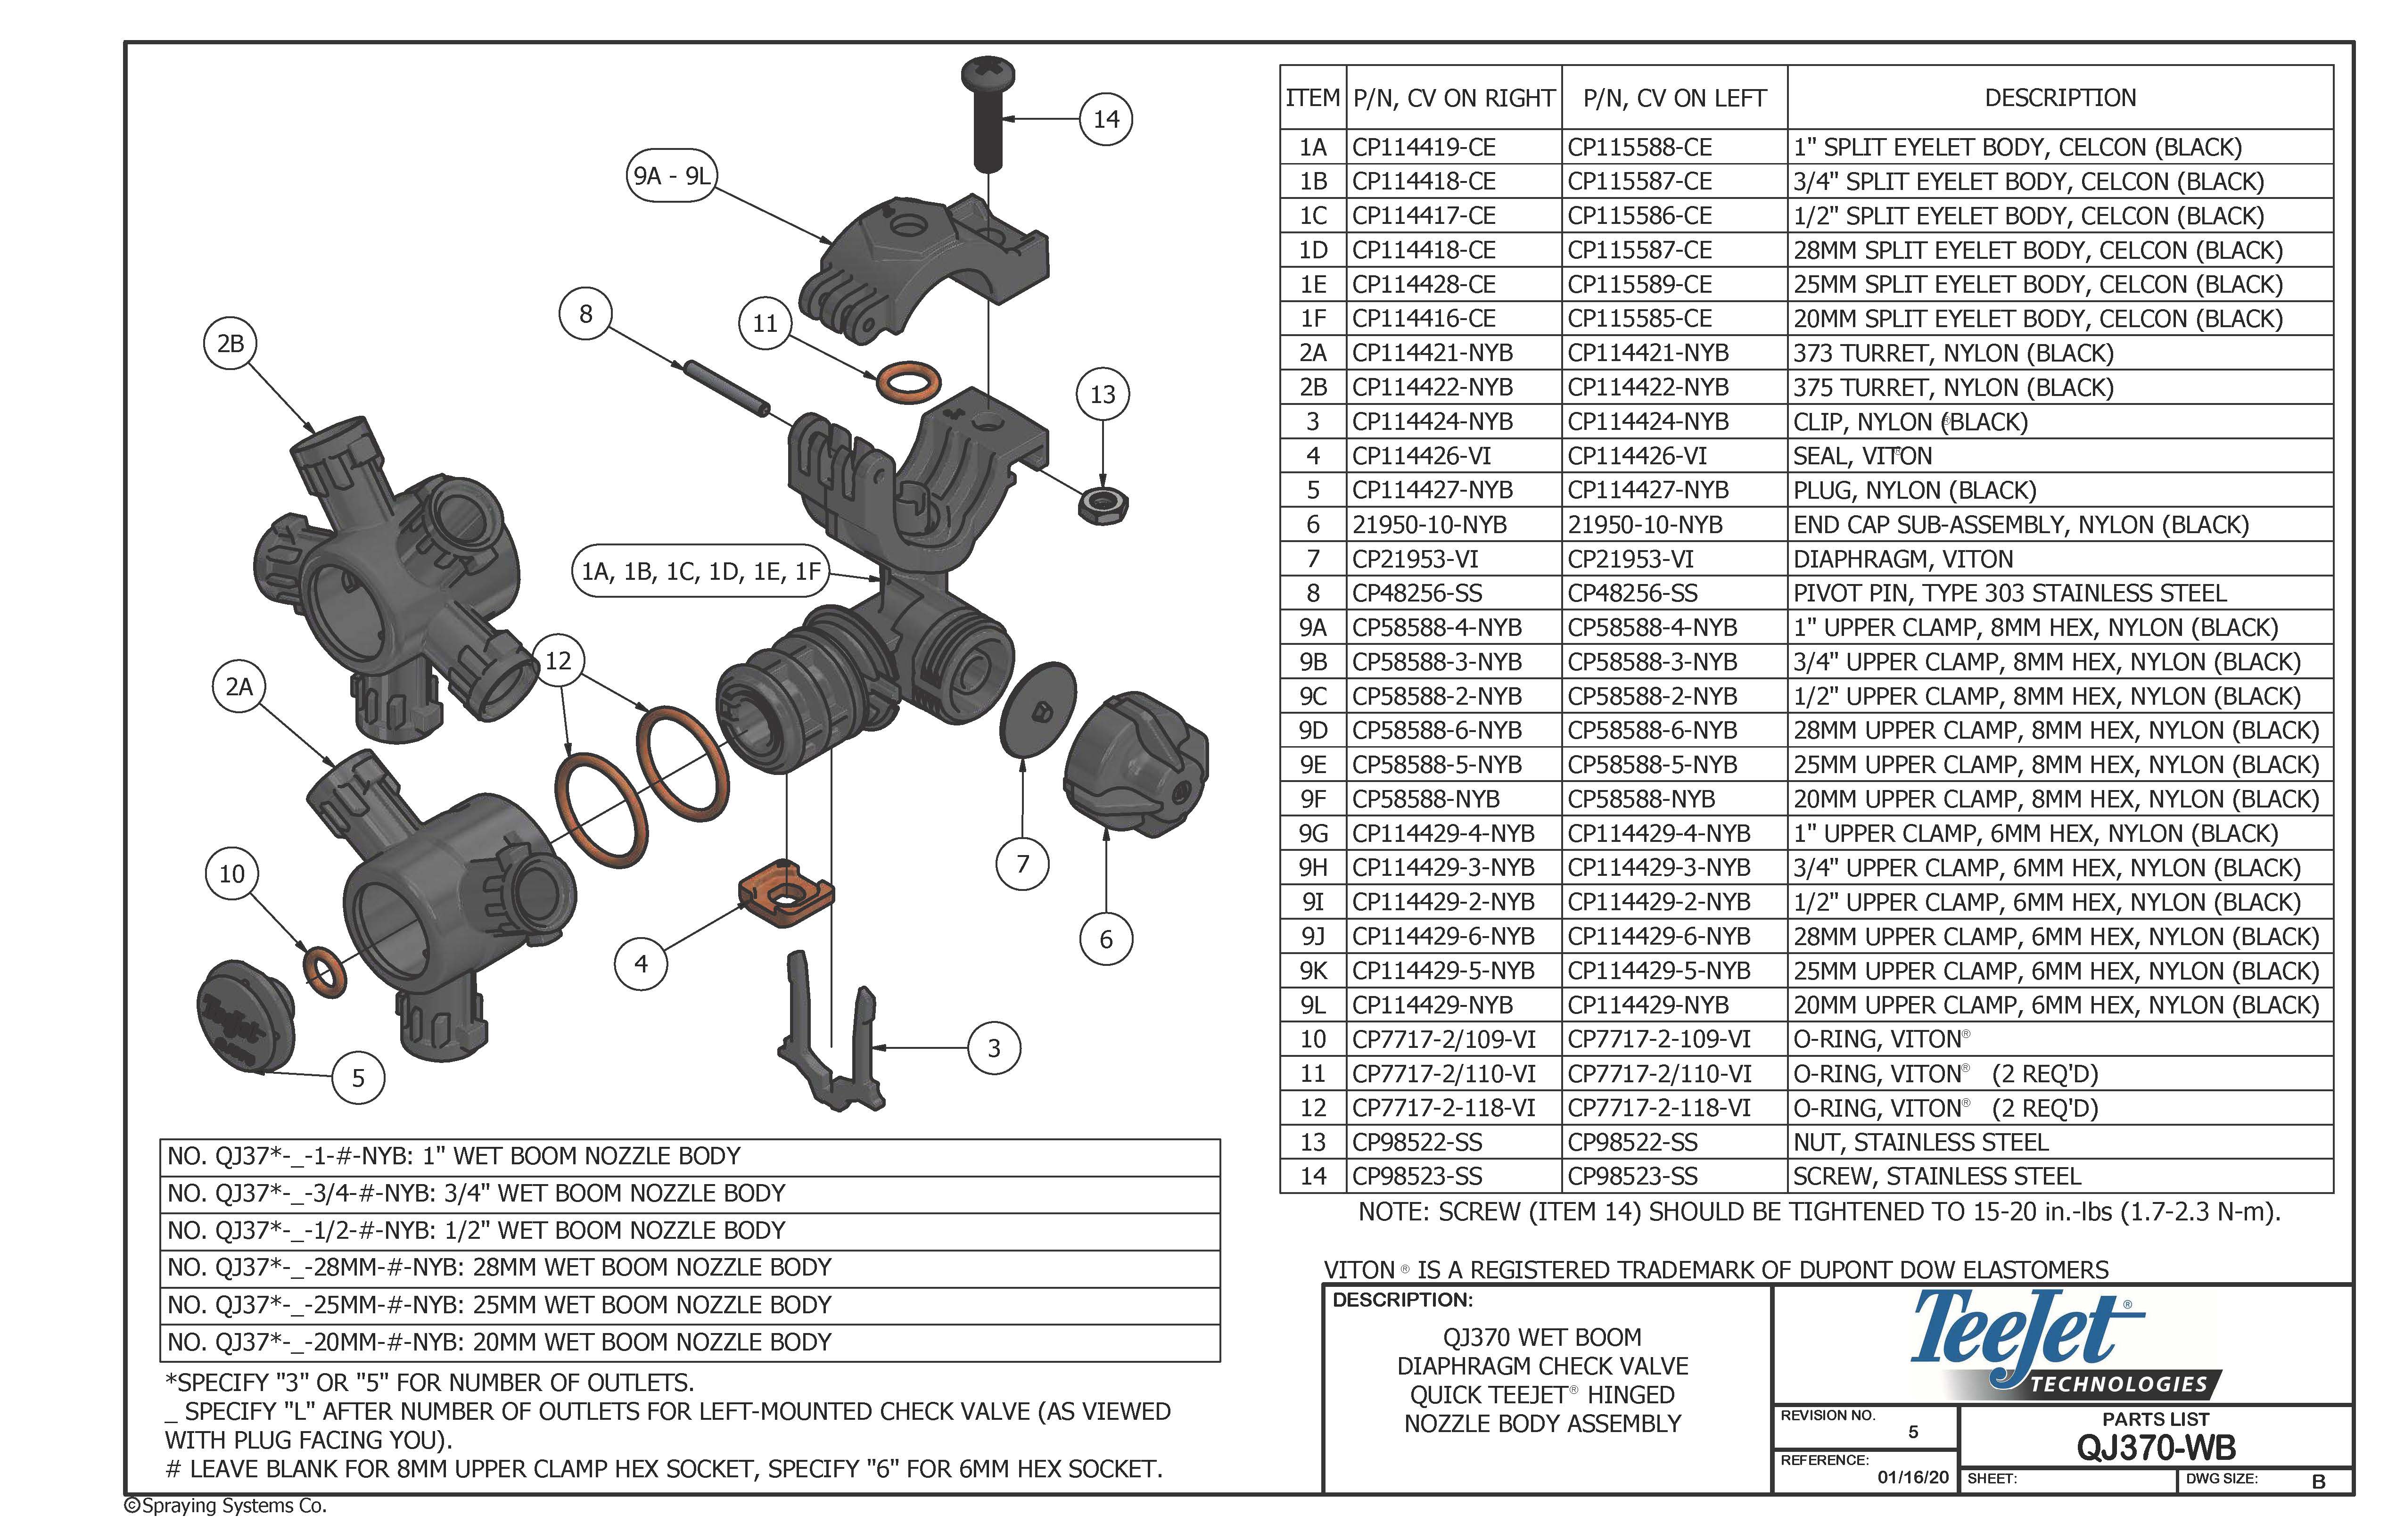 Parts List, QJ370-WB (cover image)